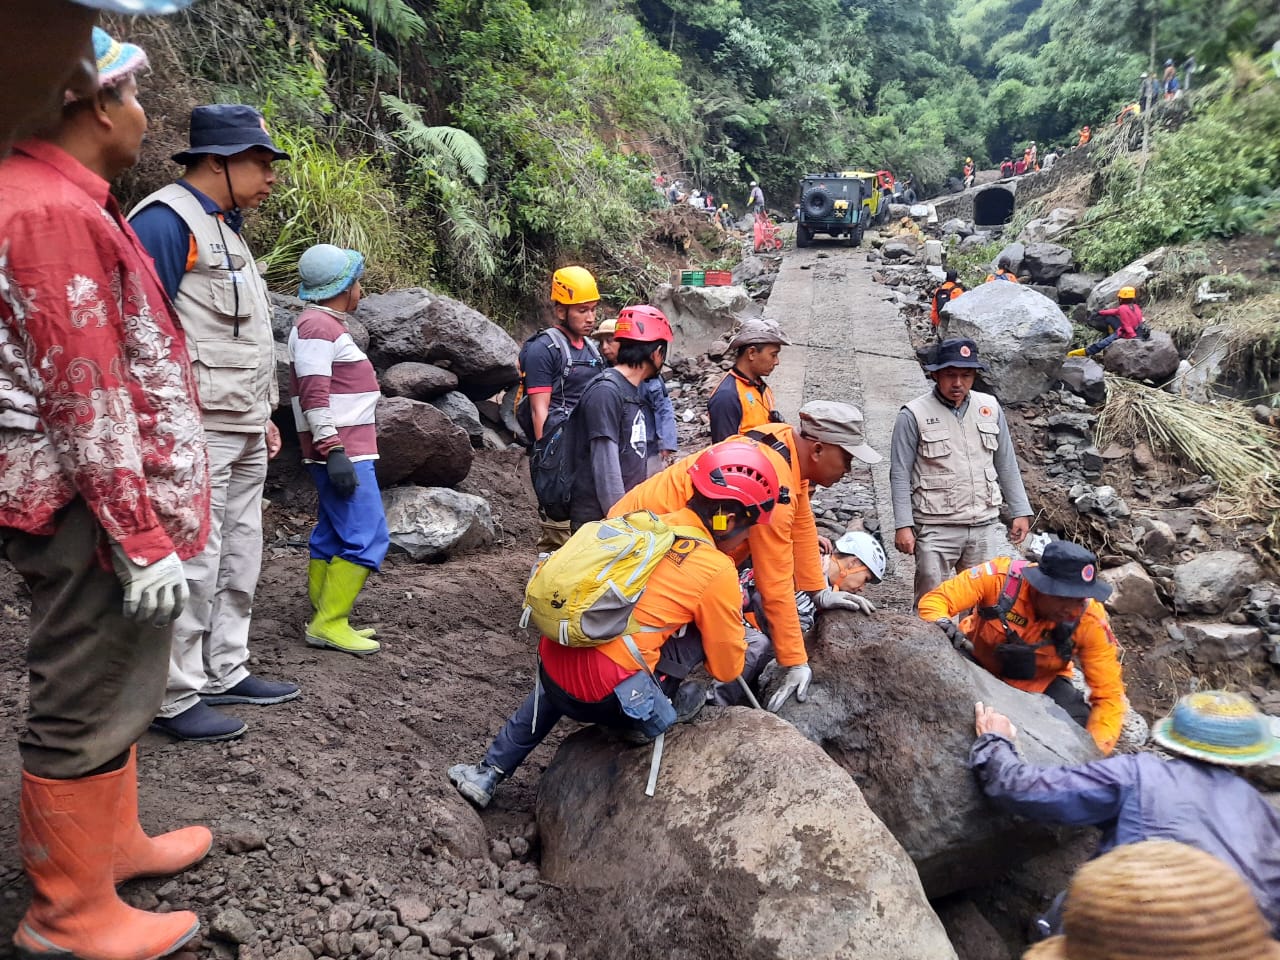 Waspada! Lereng Bekas Karhutla Bisa Picu Banjir Bandang, BPBD Semarang Ajak Belajar Pada Kasus Merbabu